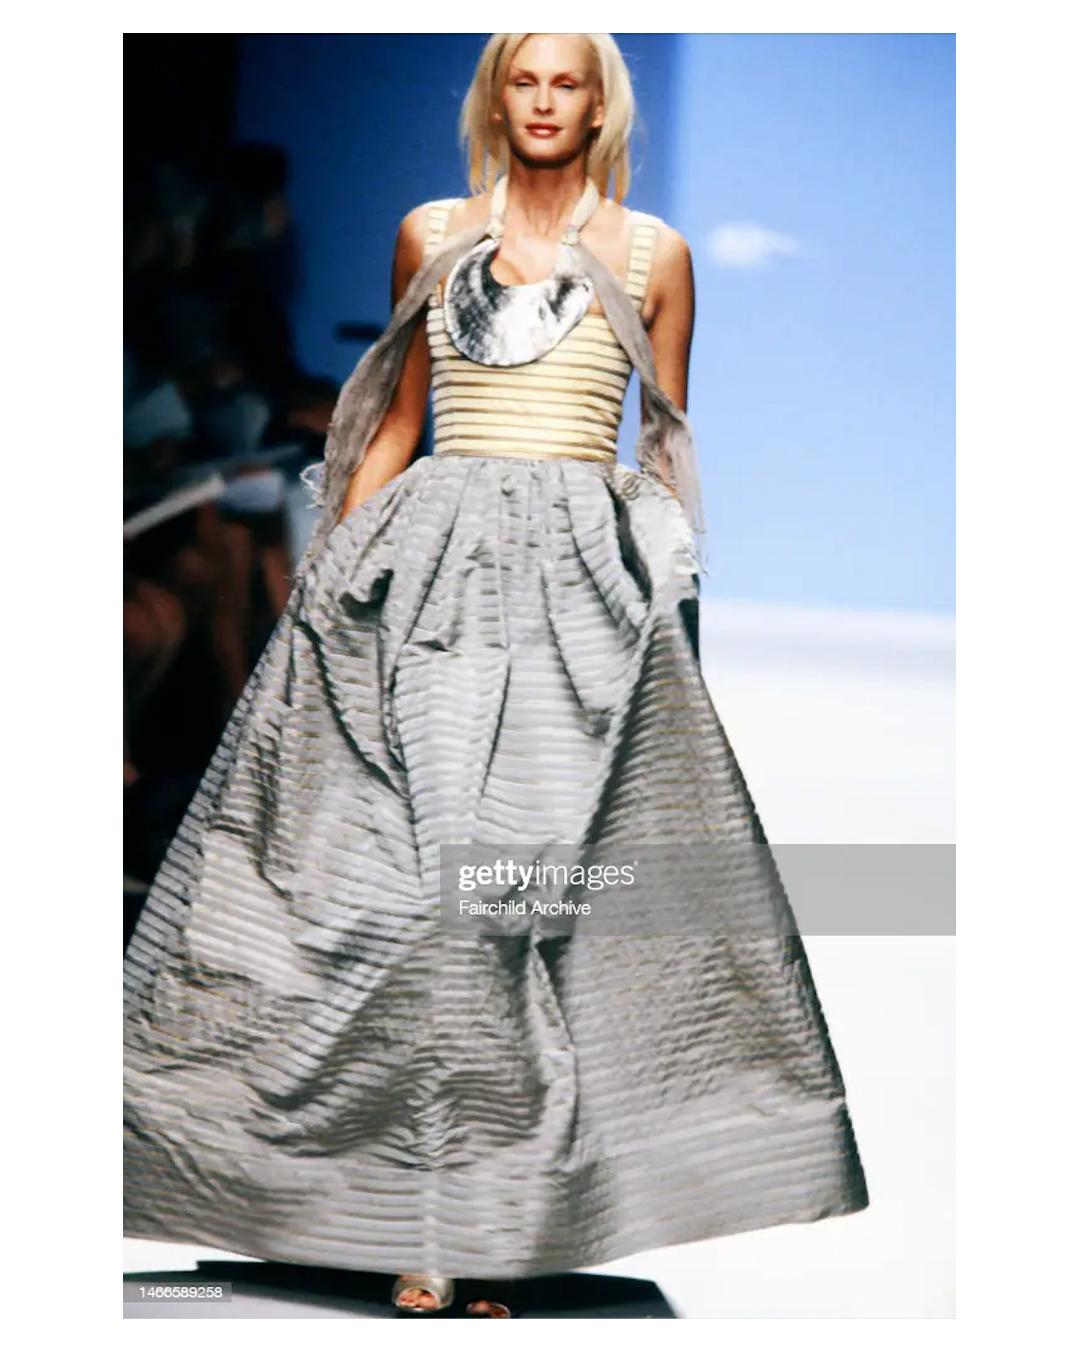 LOVE LALI VINTAGE 

Ein unglaubliches Kleid von Oscar de La Renta aus der Spring Summer 2000 Kollektion
Hellgelbes Oberteil im Korsettstil mit einem grauen, strukturierten Rock, der schön ausläuft 
Streifendesign
Abnehmbarer Gürtel, der am Rücken zu